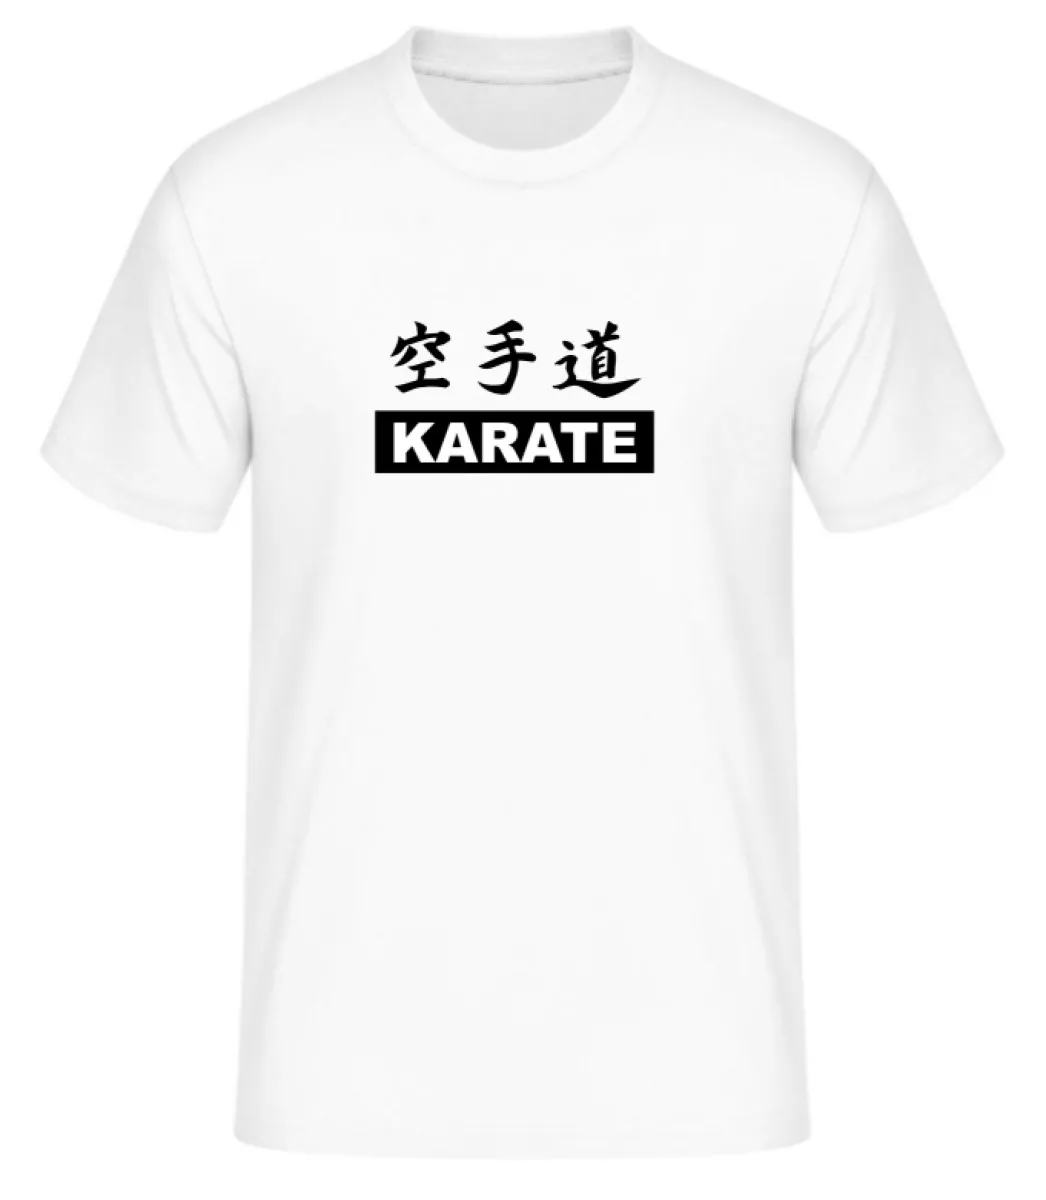 T-shirt Karate doen wit